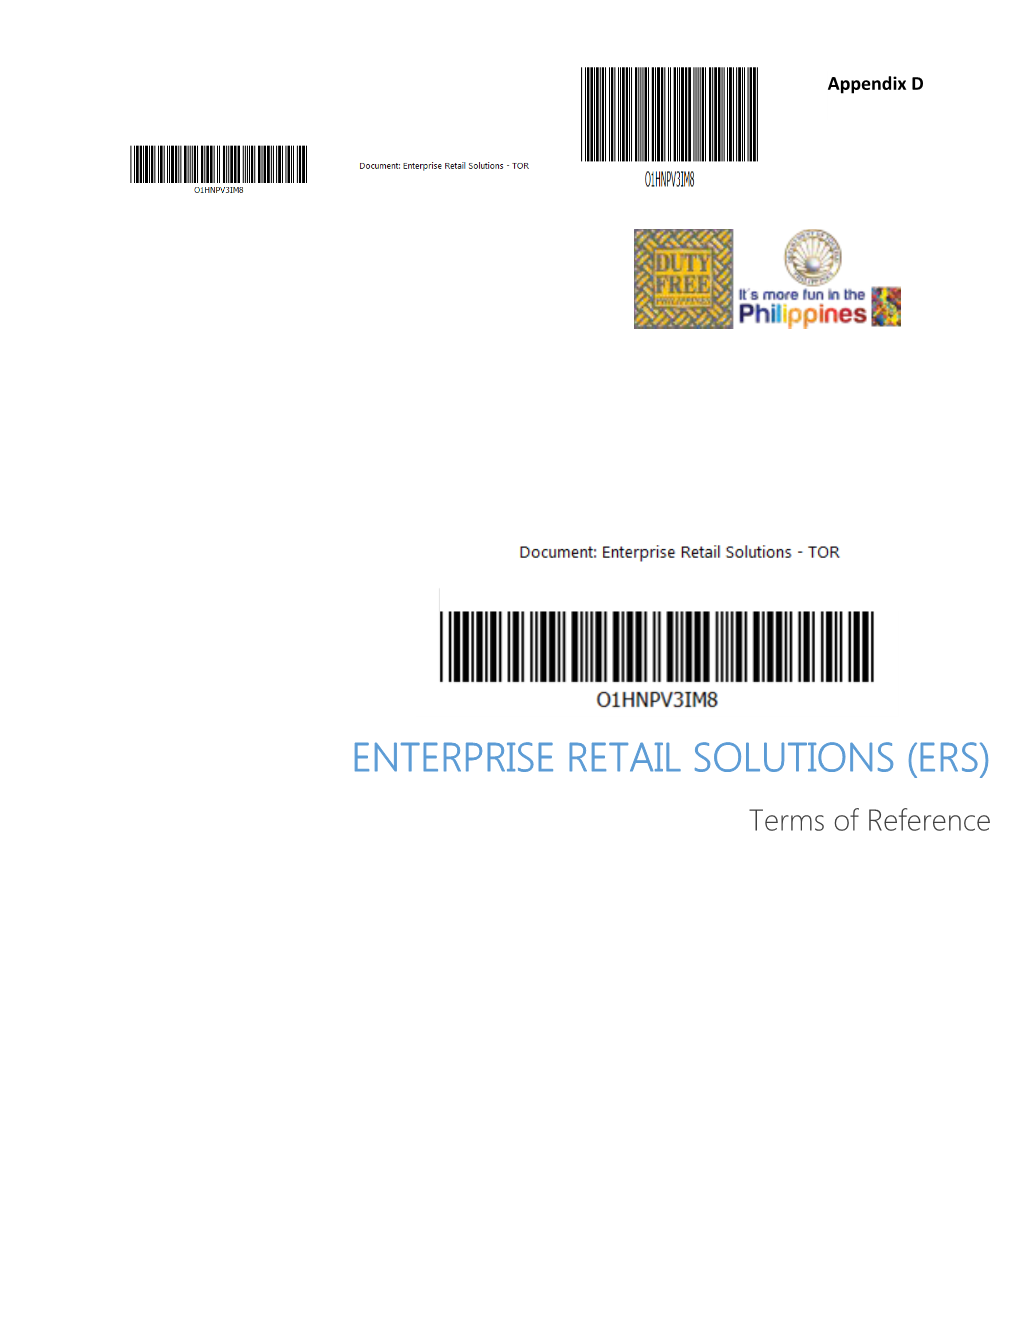 Enterprise Retail Solutions (ERS)